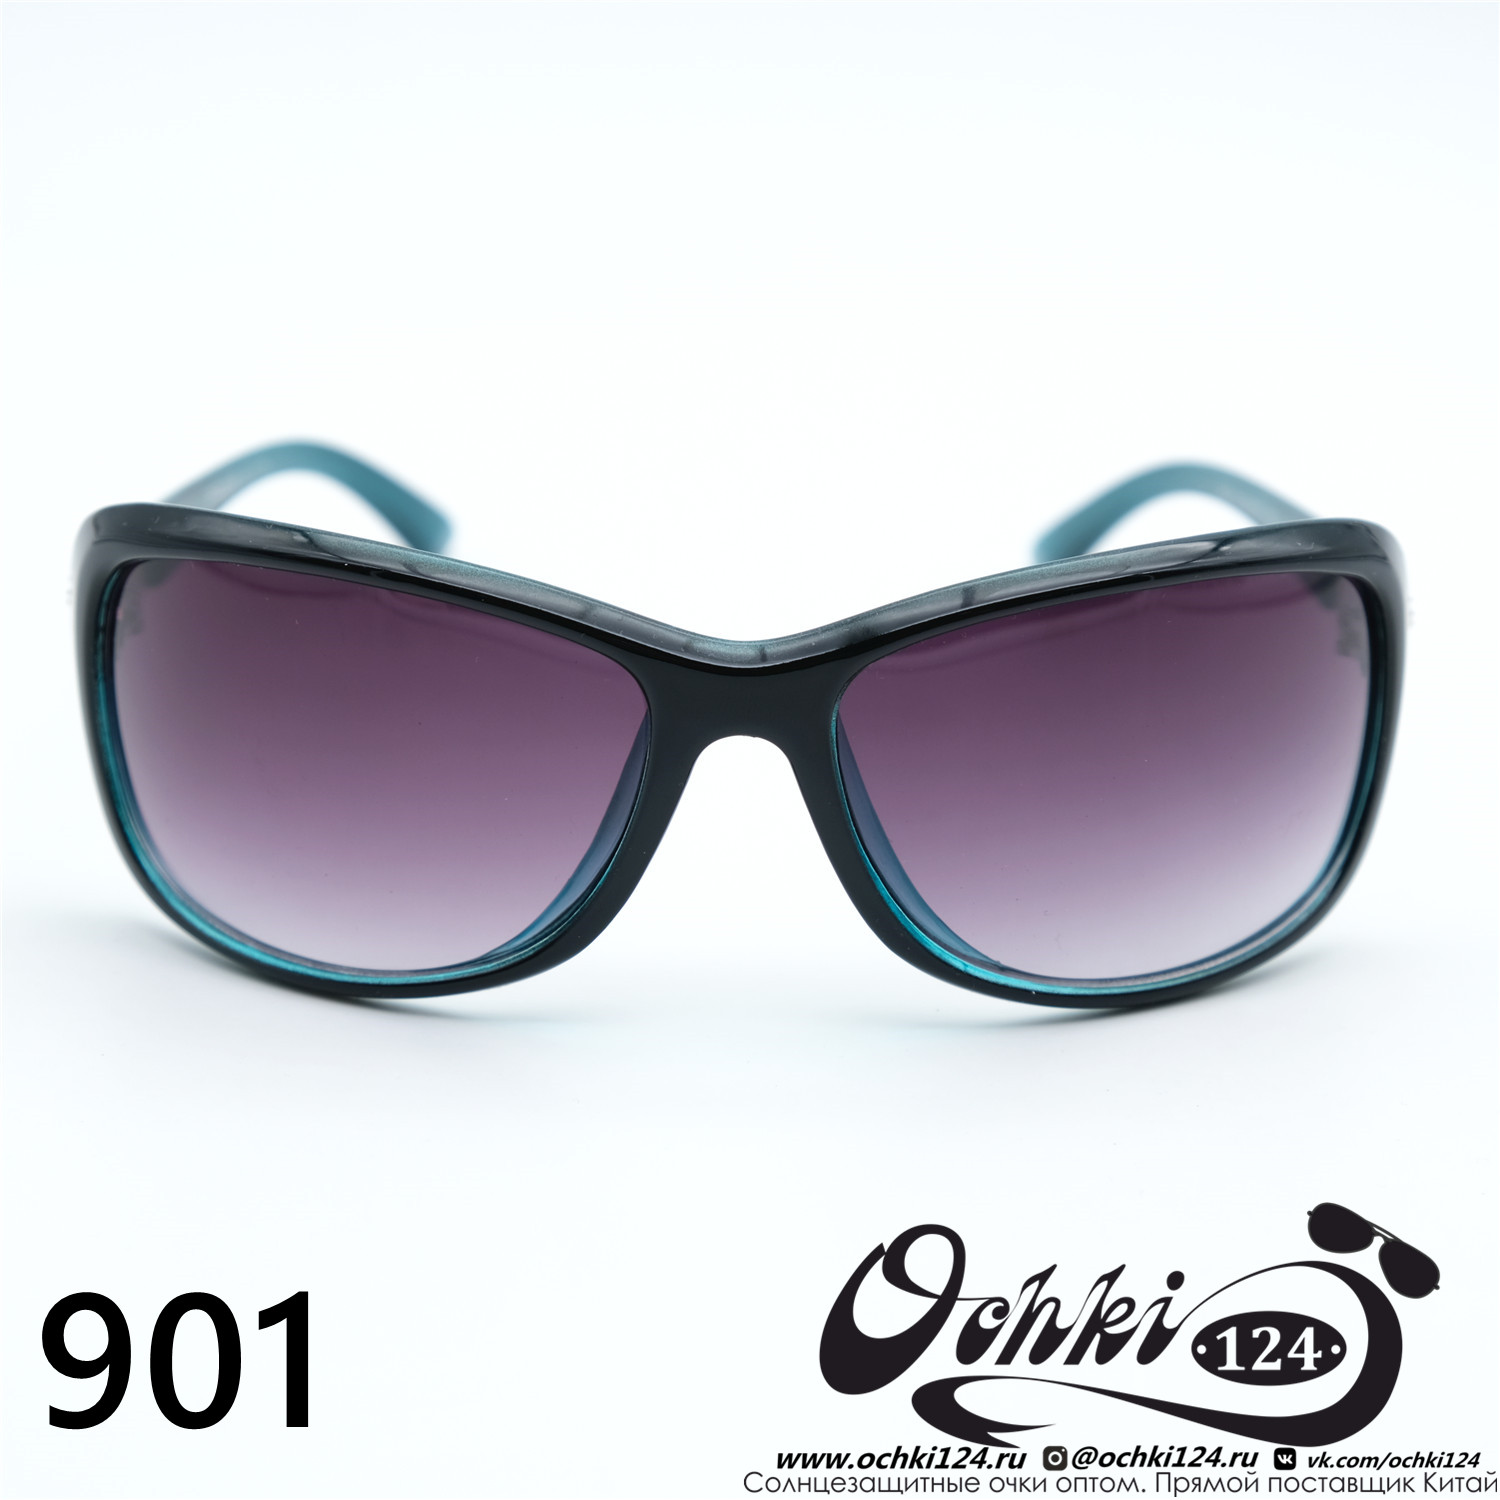  Солнцезащитные очки картинка Женские Prius  Стандартные 901-C4 